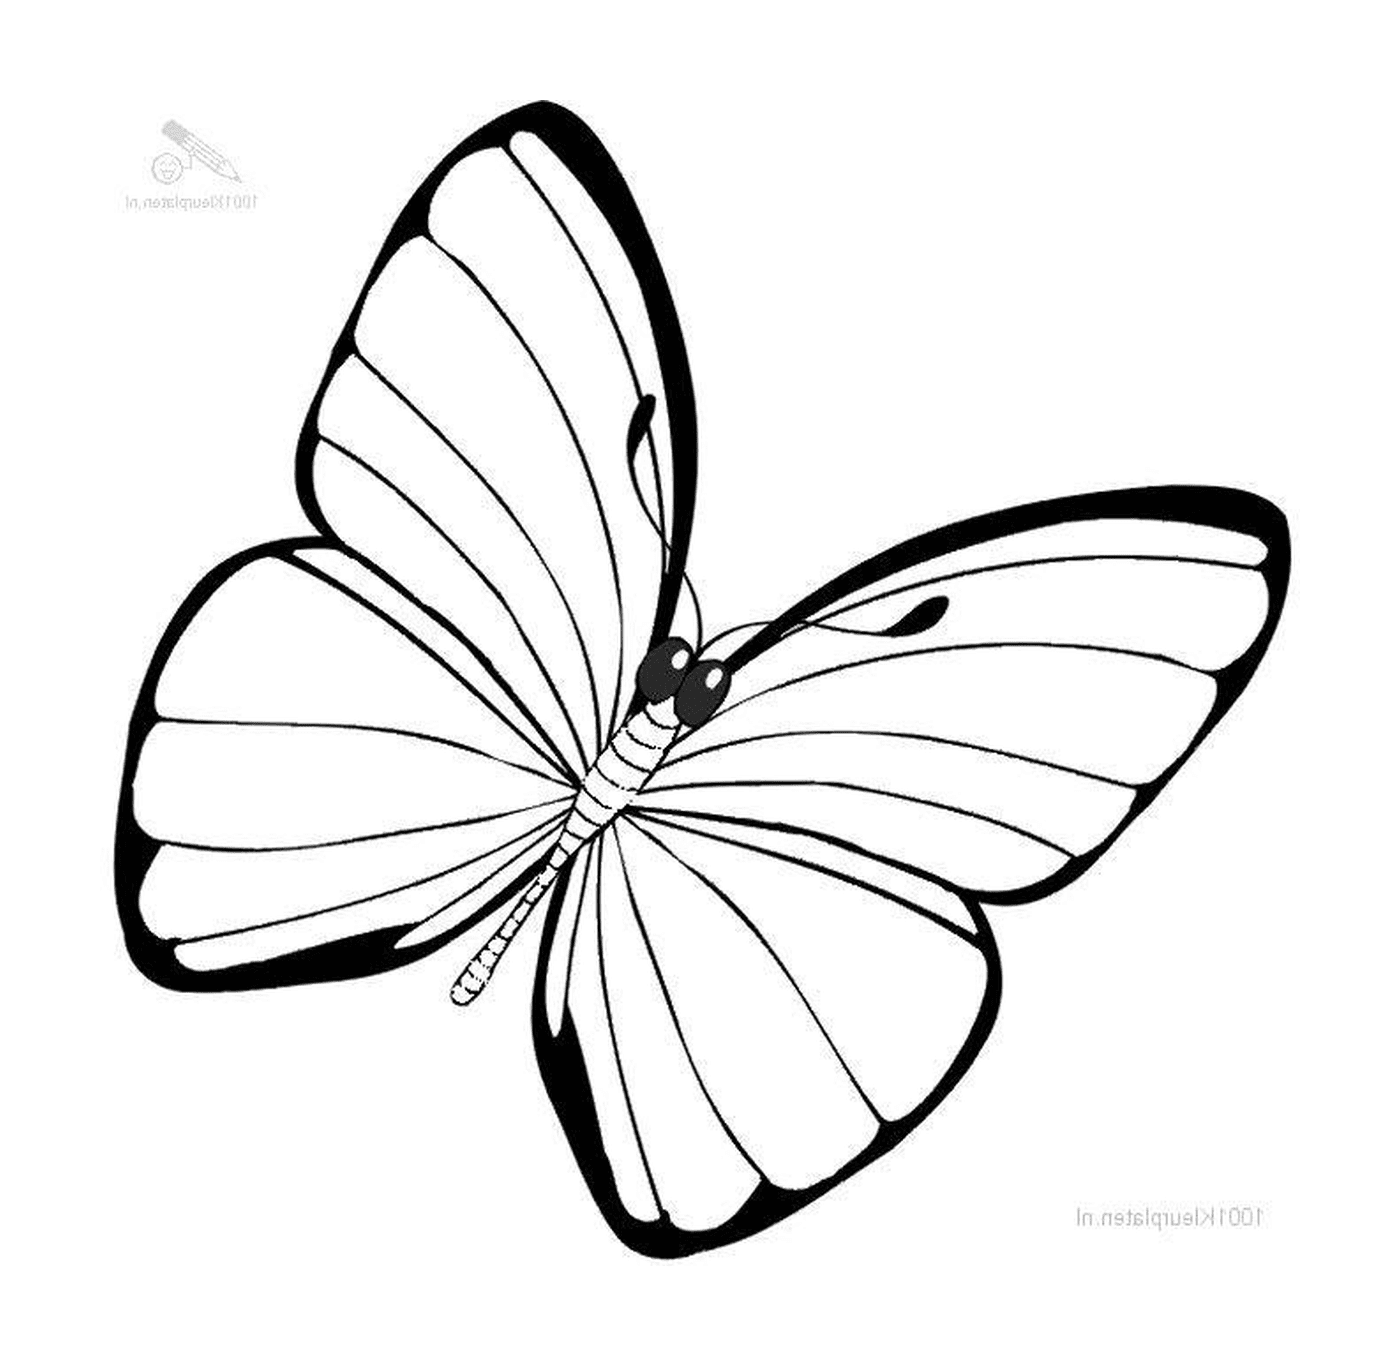  flimmernde Schmetterling mit Leichtigkeit 